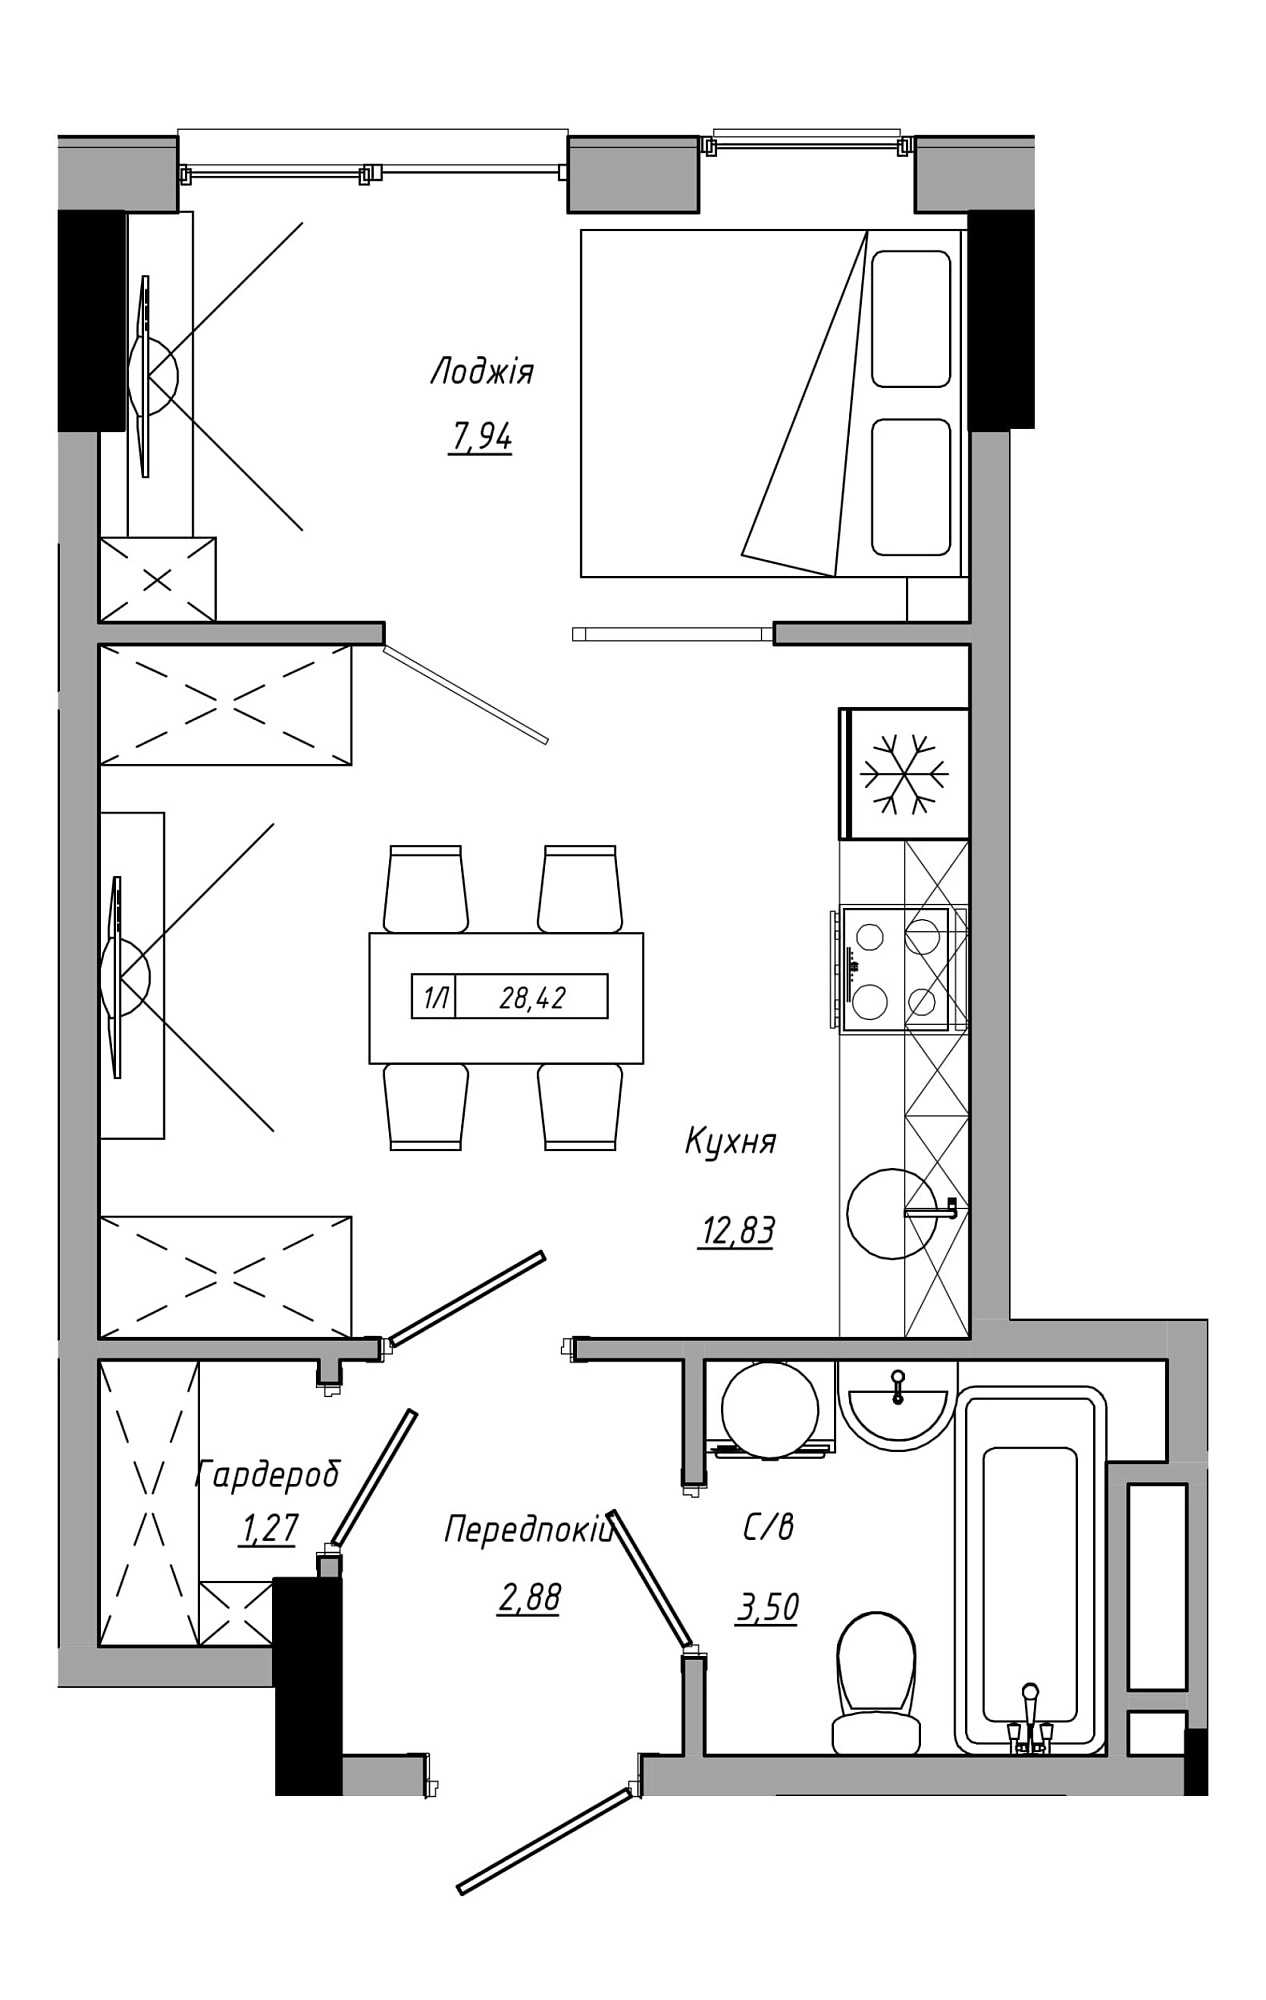 Планировка 1-к квартира площей 28.42м2, AB-21-05/00014.